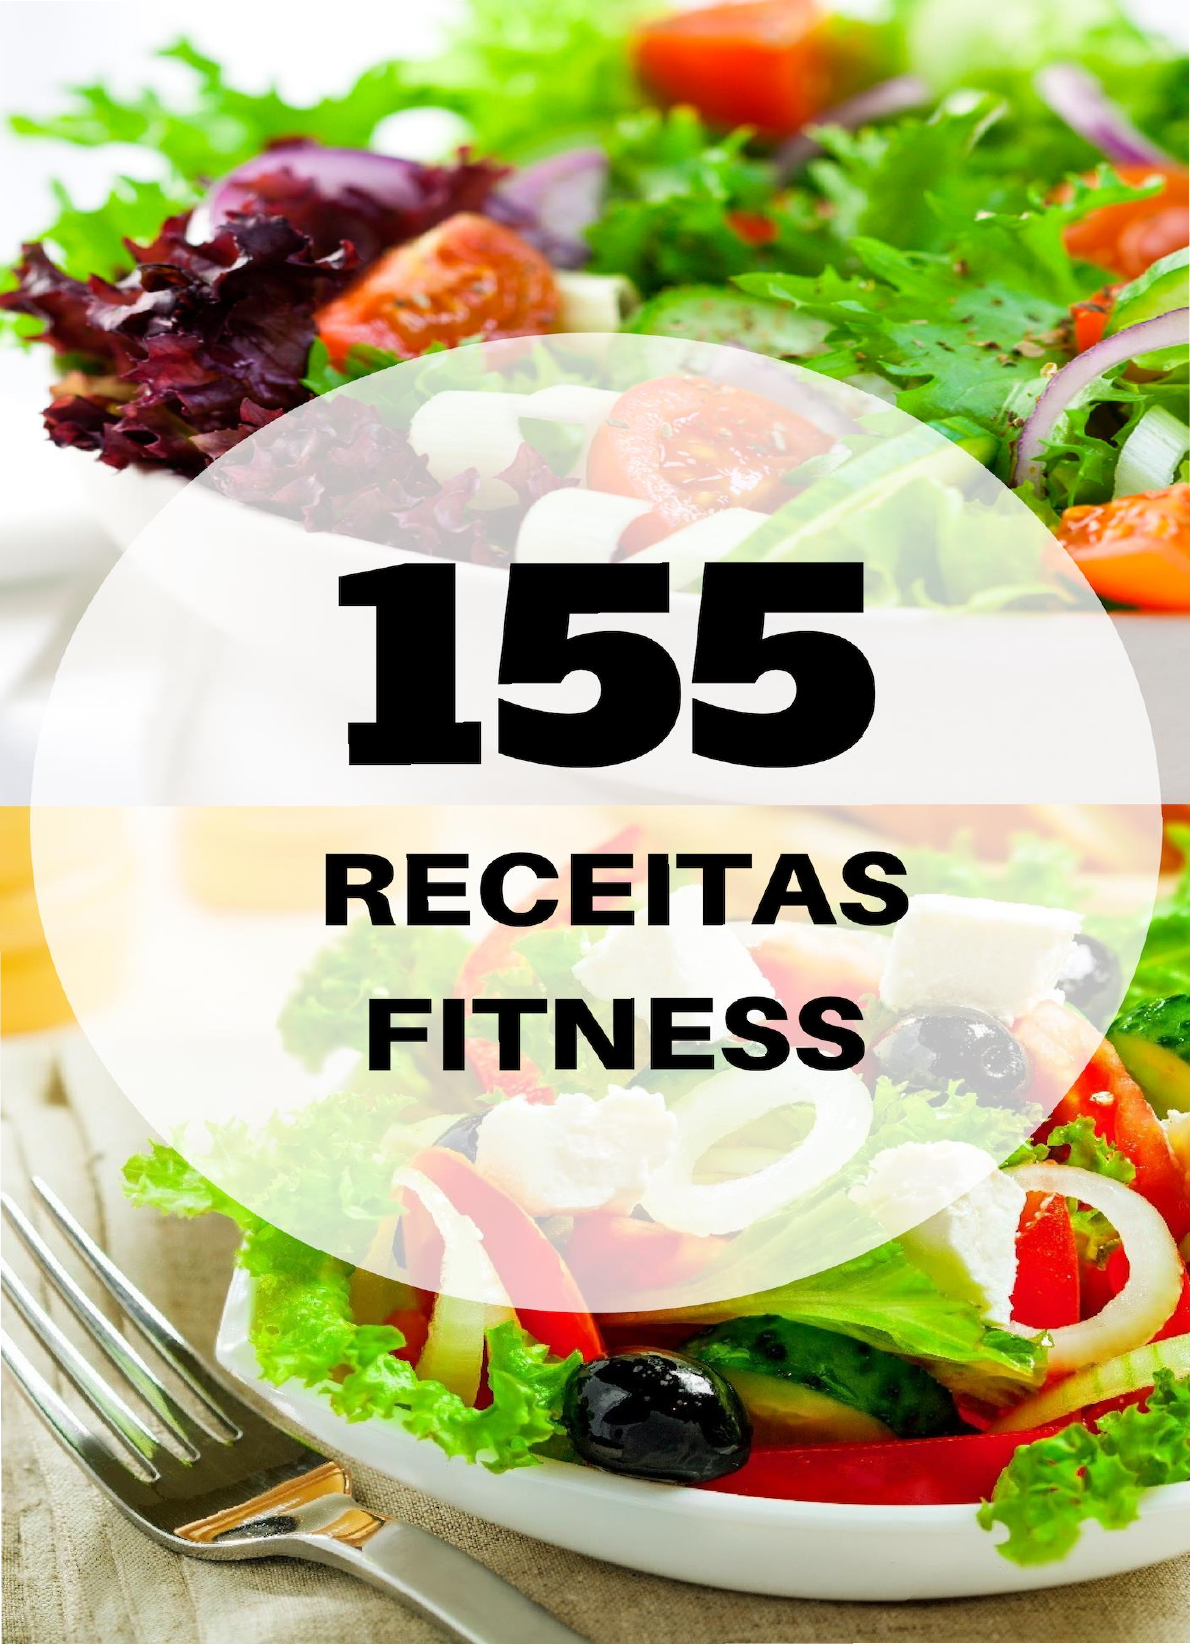 155 receitas fitness - Nutrição